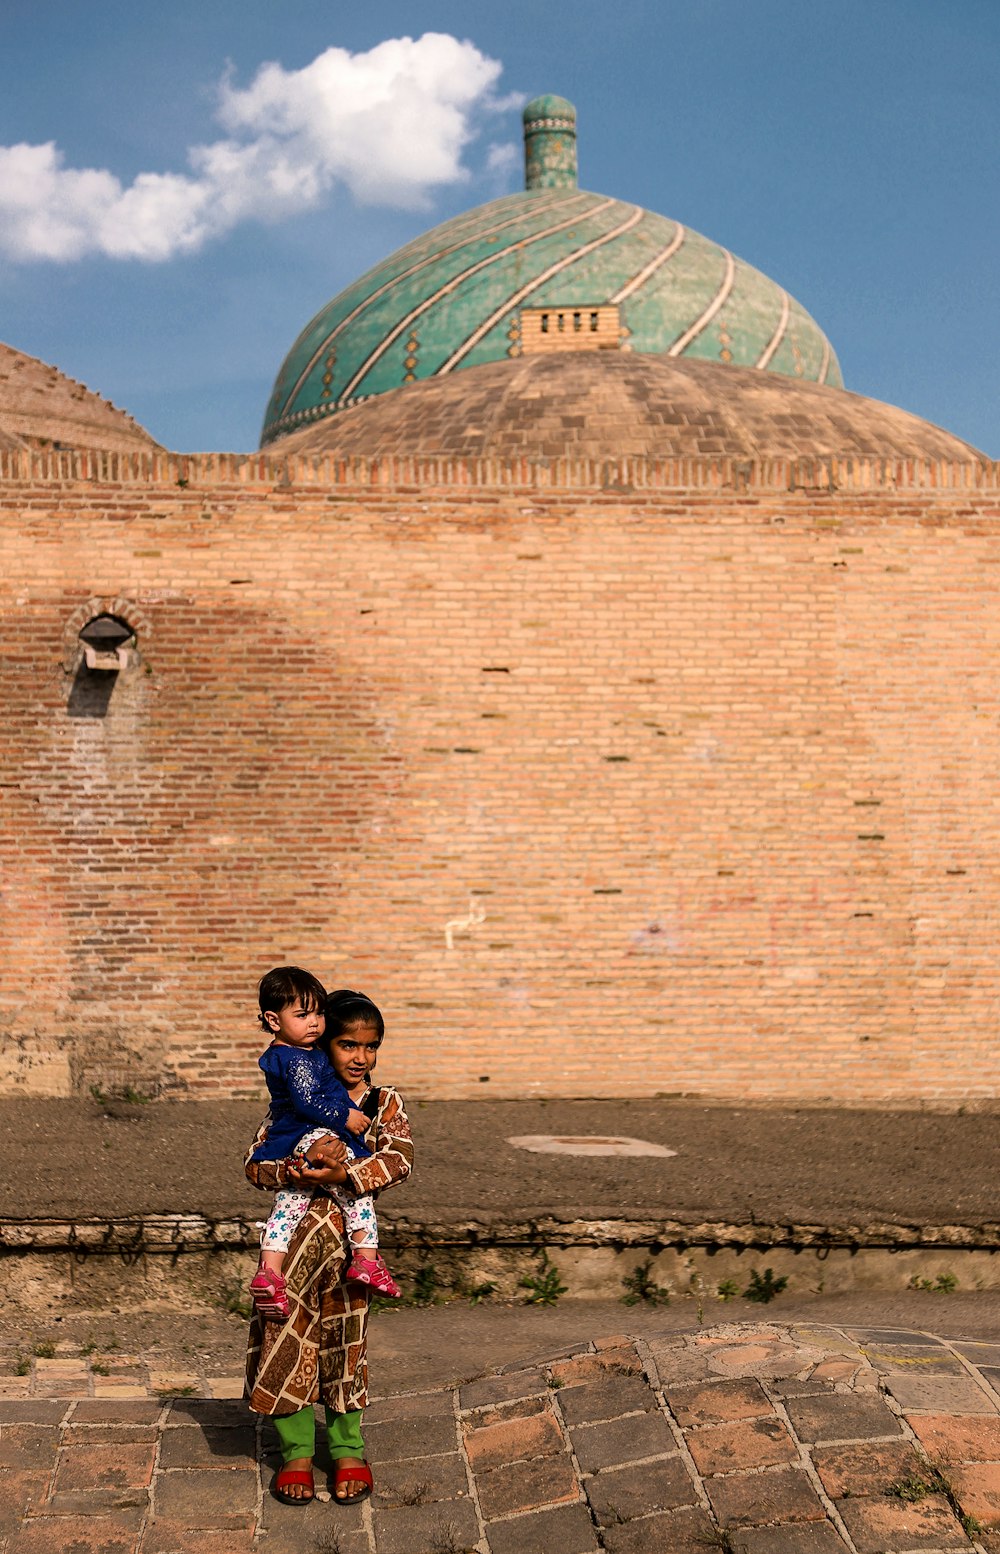 Muchacha que lleva a un niño pequeño de pie junto al edificio de la cúpula marrón y verde